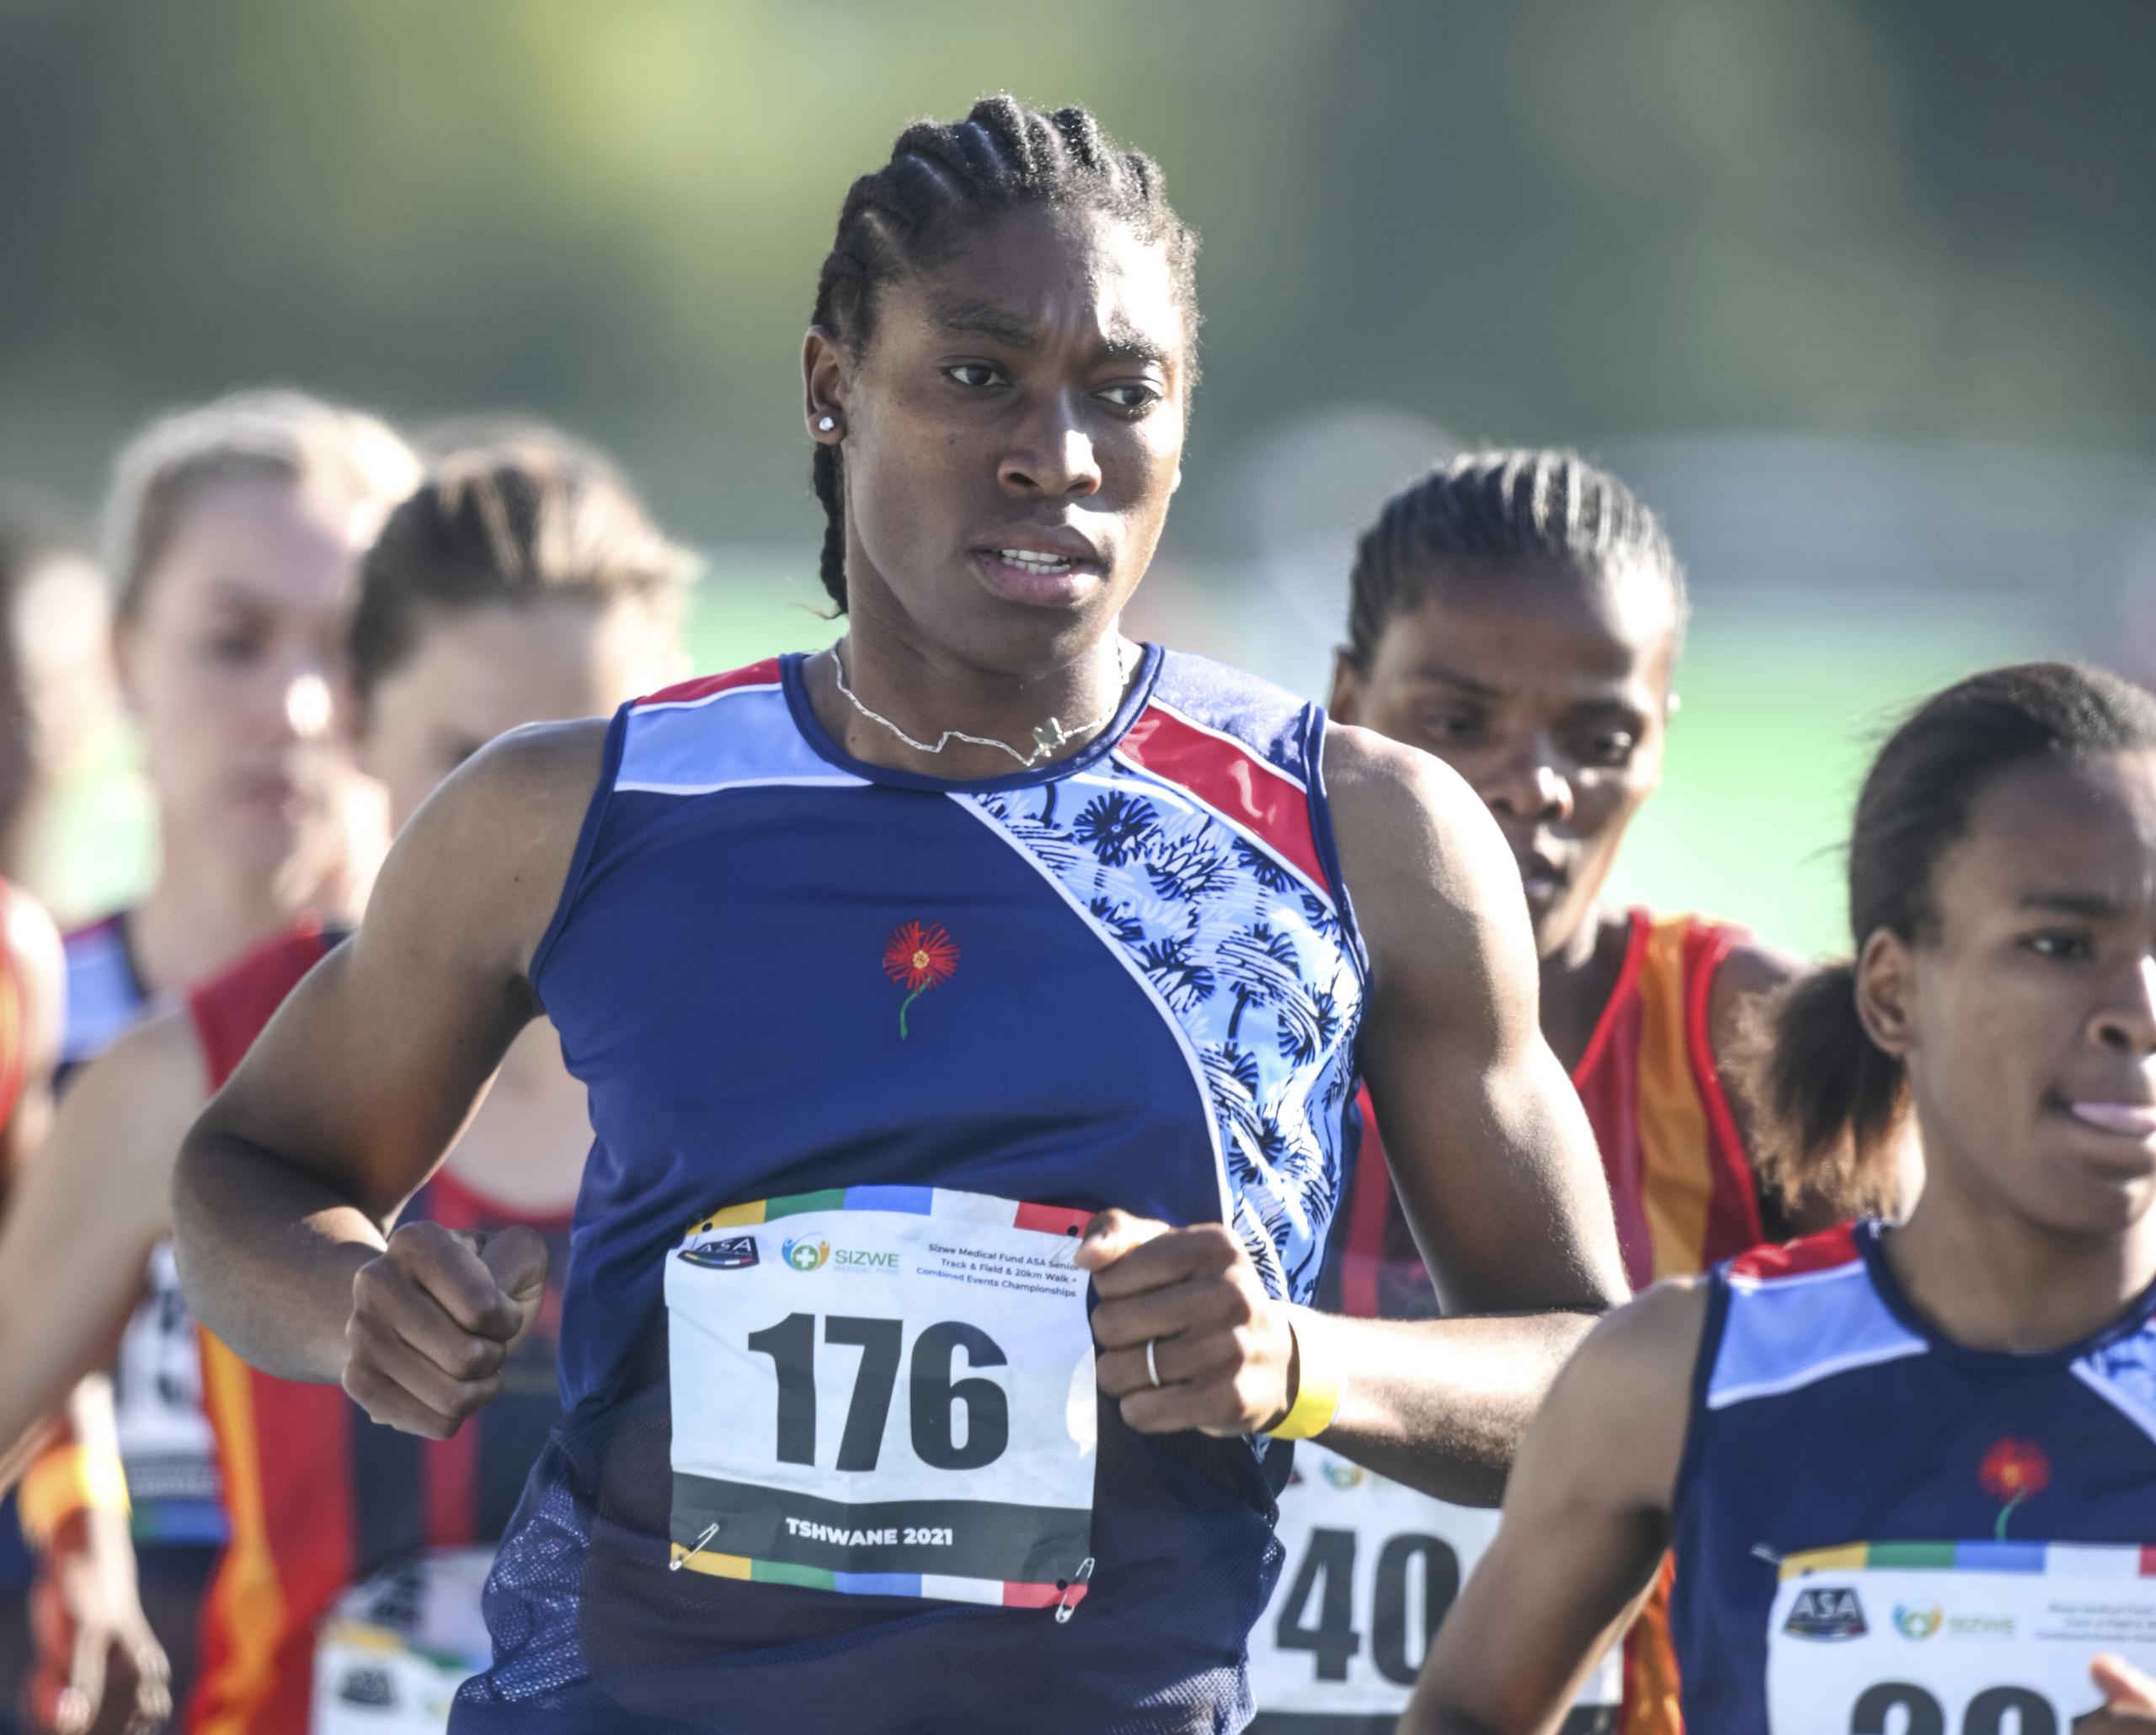 La corredora sudafricana Caster Semenya  (176) fue inscrita para participar en la prueba de los 5,000 metros en el Mundial de Atletismo de Eugene, Oregon.